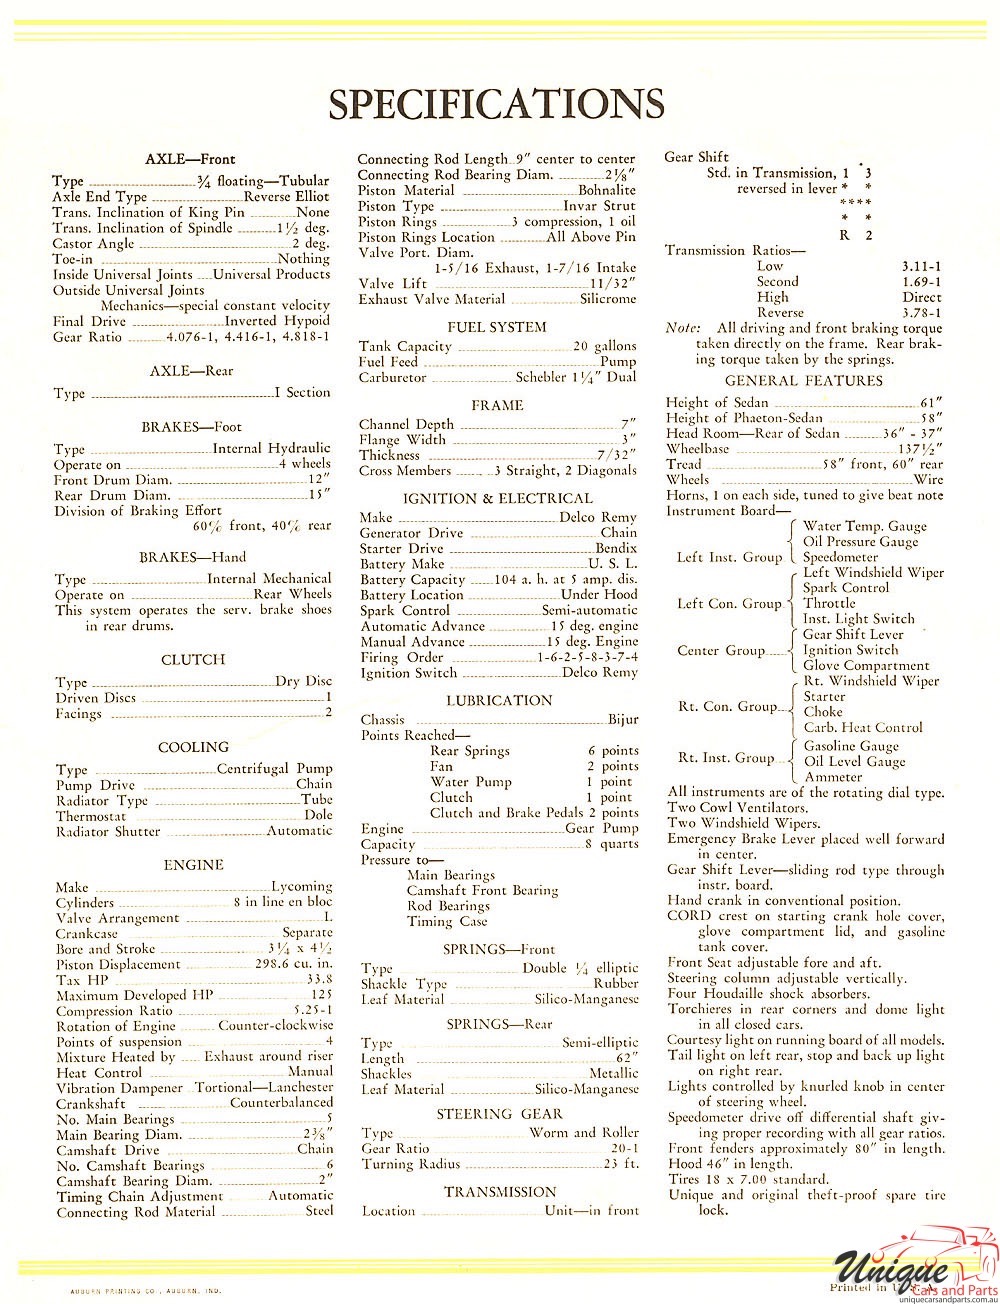 1929 Cord Catalogue Page 1